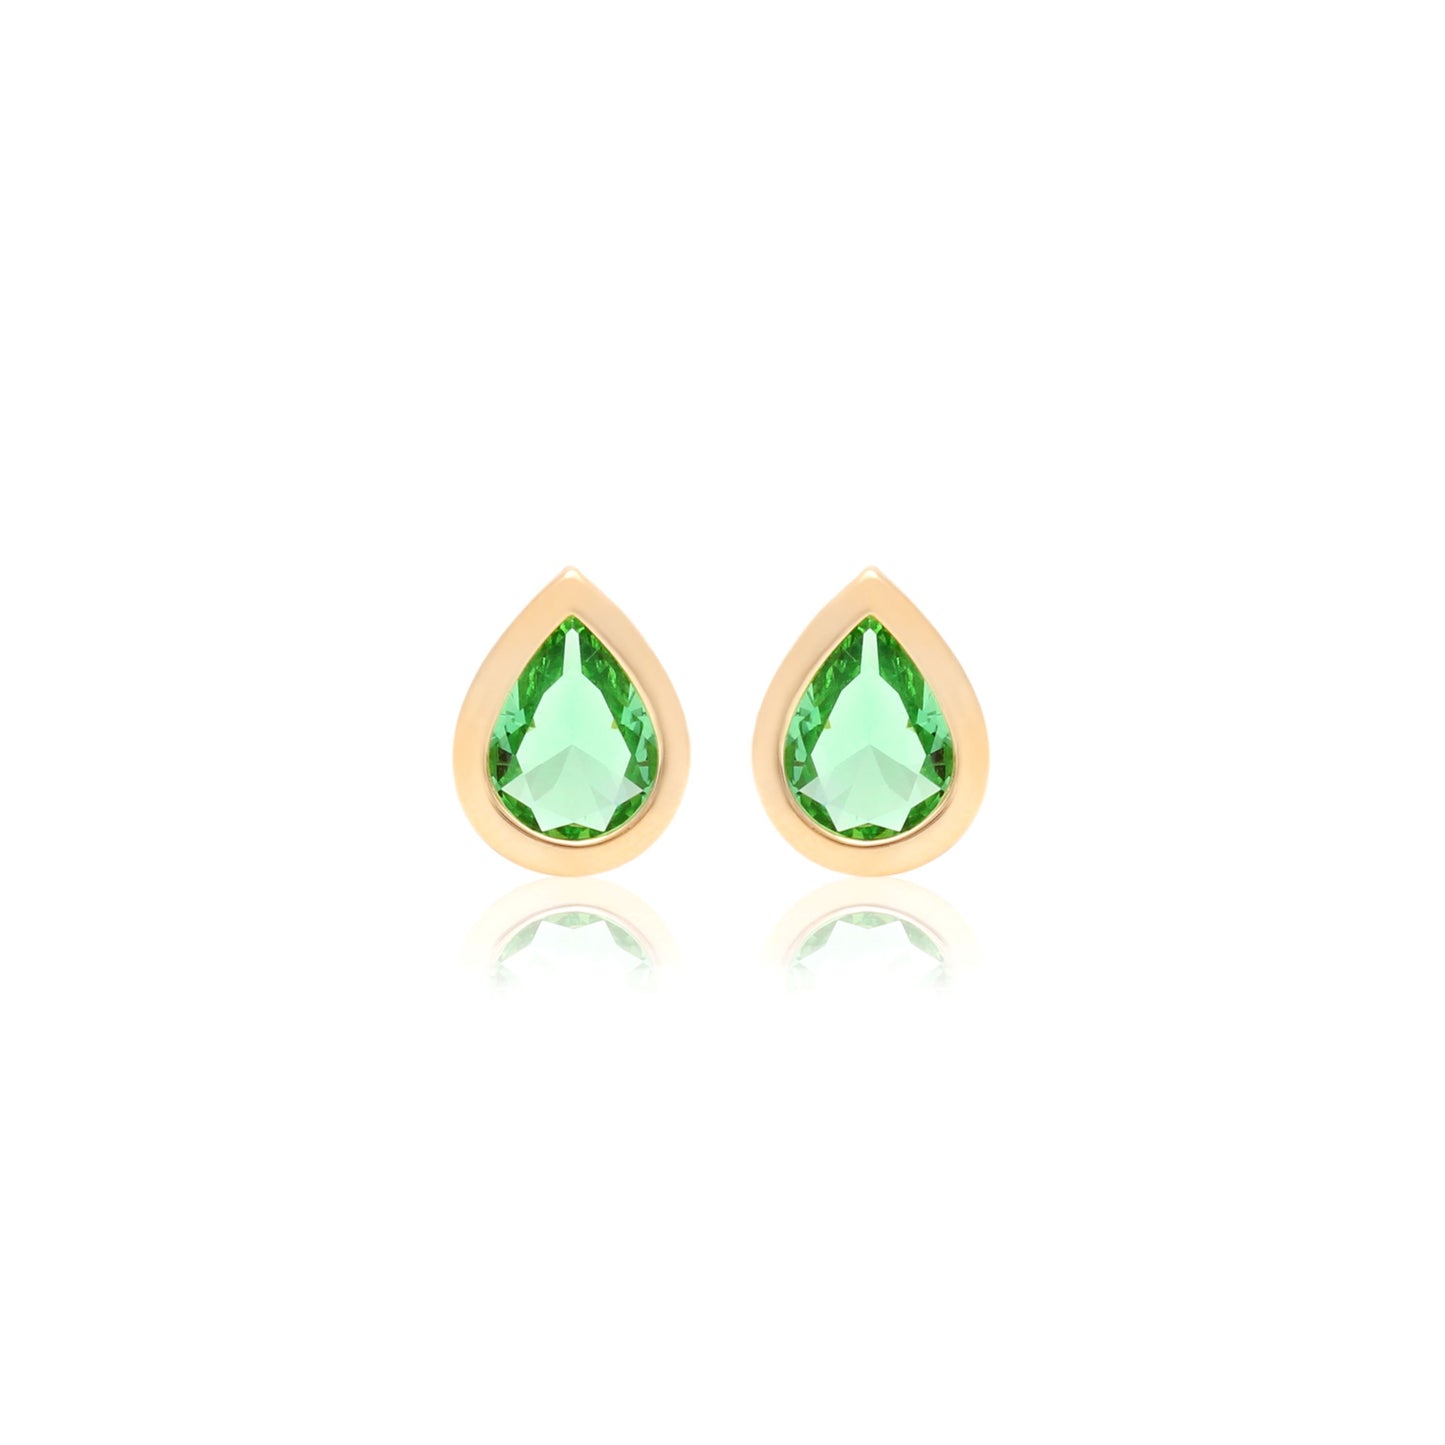 Peridot drop earrings